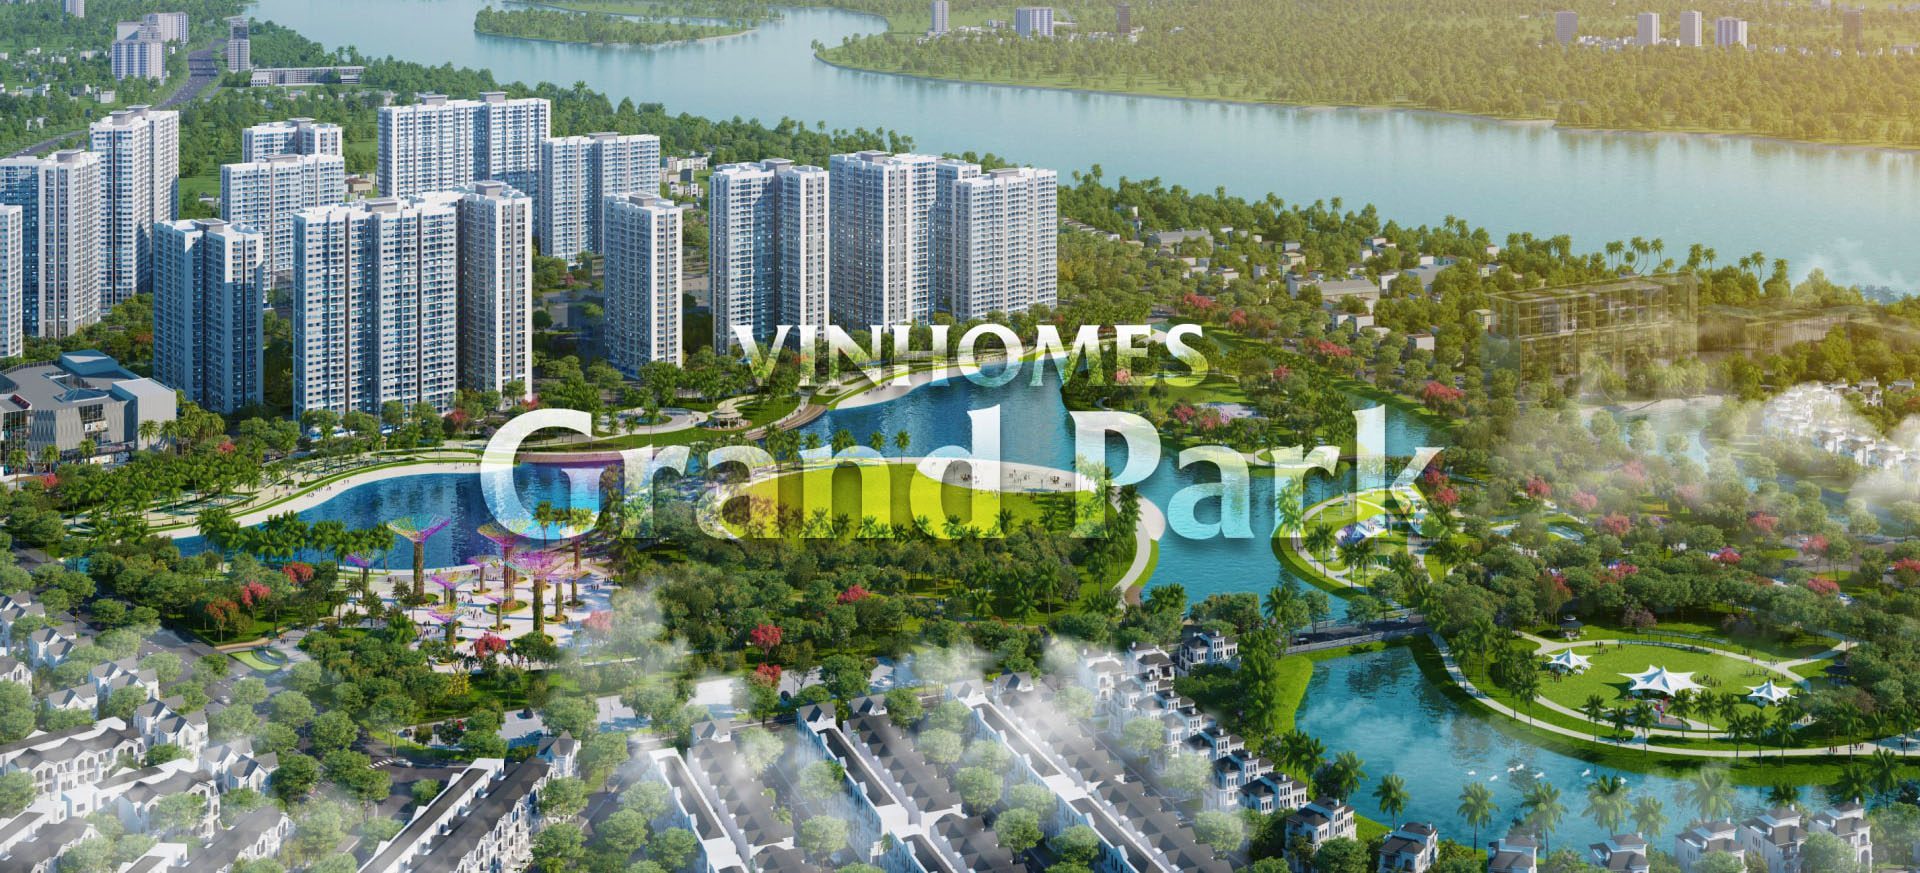 Vinhomes Grand Park Quận 9 - Thành phố cȏng viên hiện đại bậc nhất Đȏng Sài Gὸn — Đȏng Tȃy Land